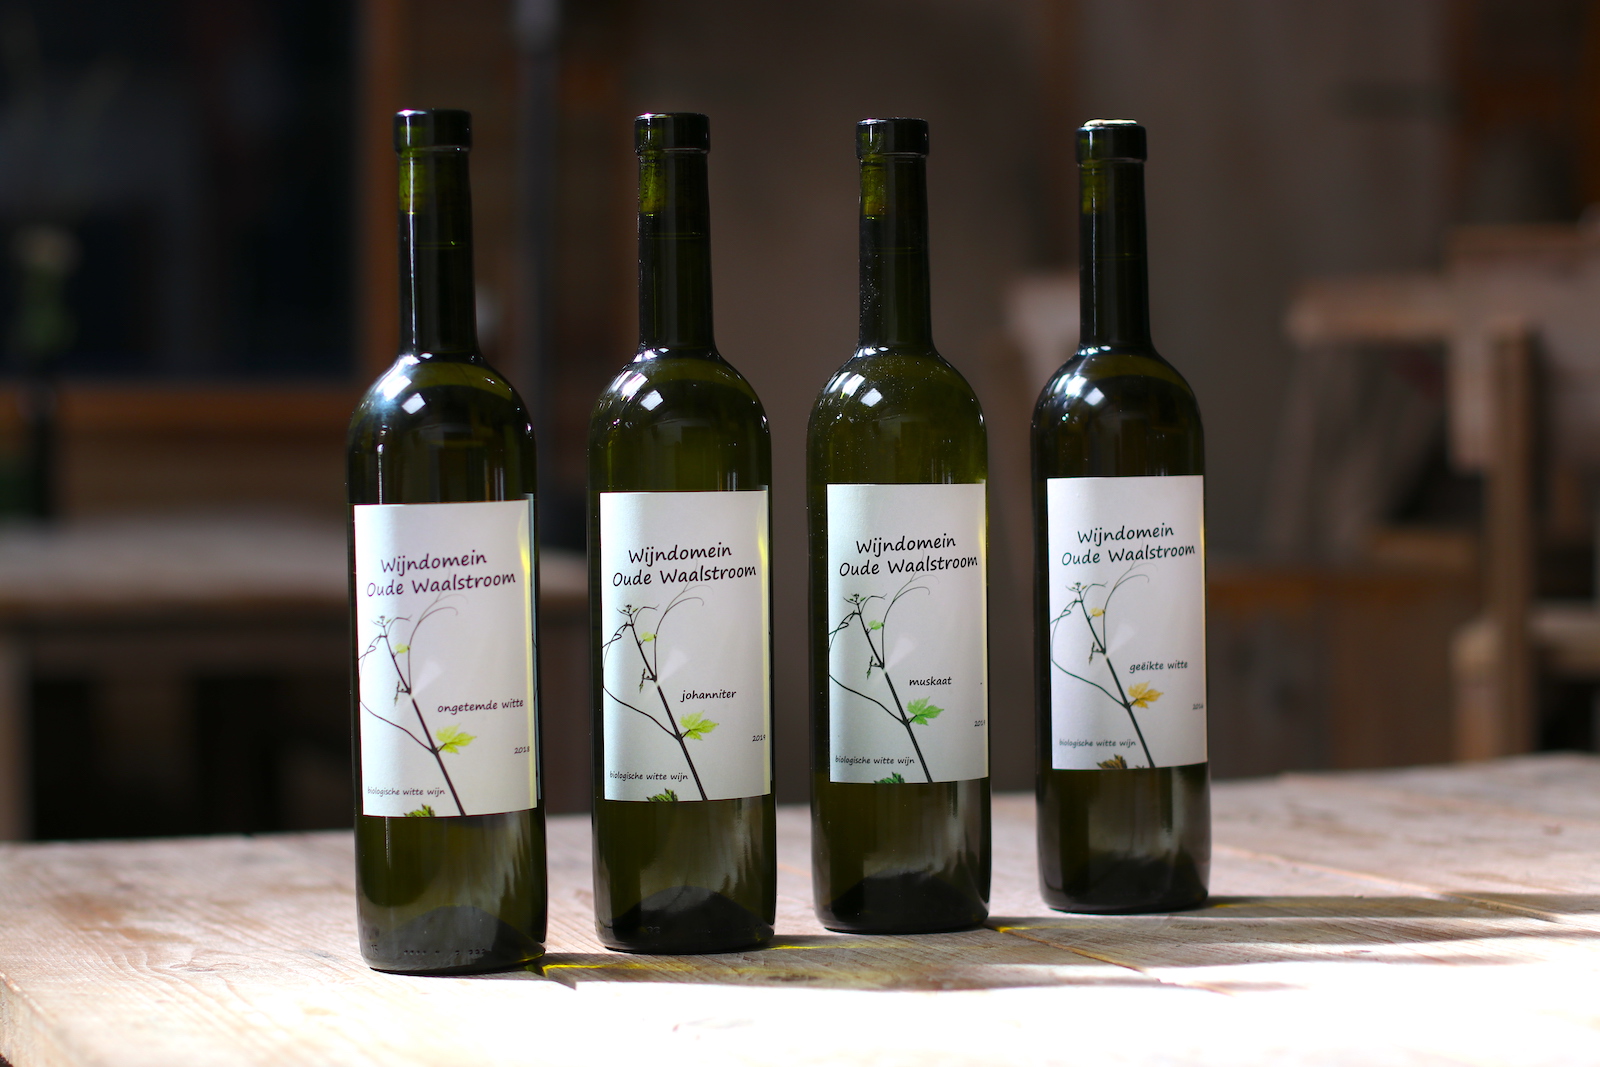 White wine varieties of Wijndomein Oude Waalstroom